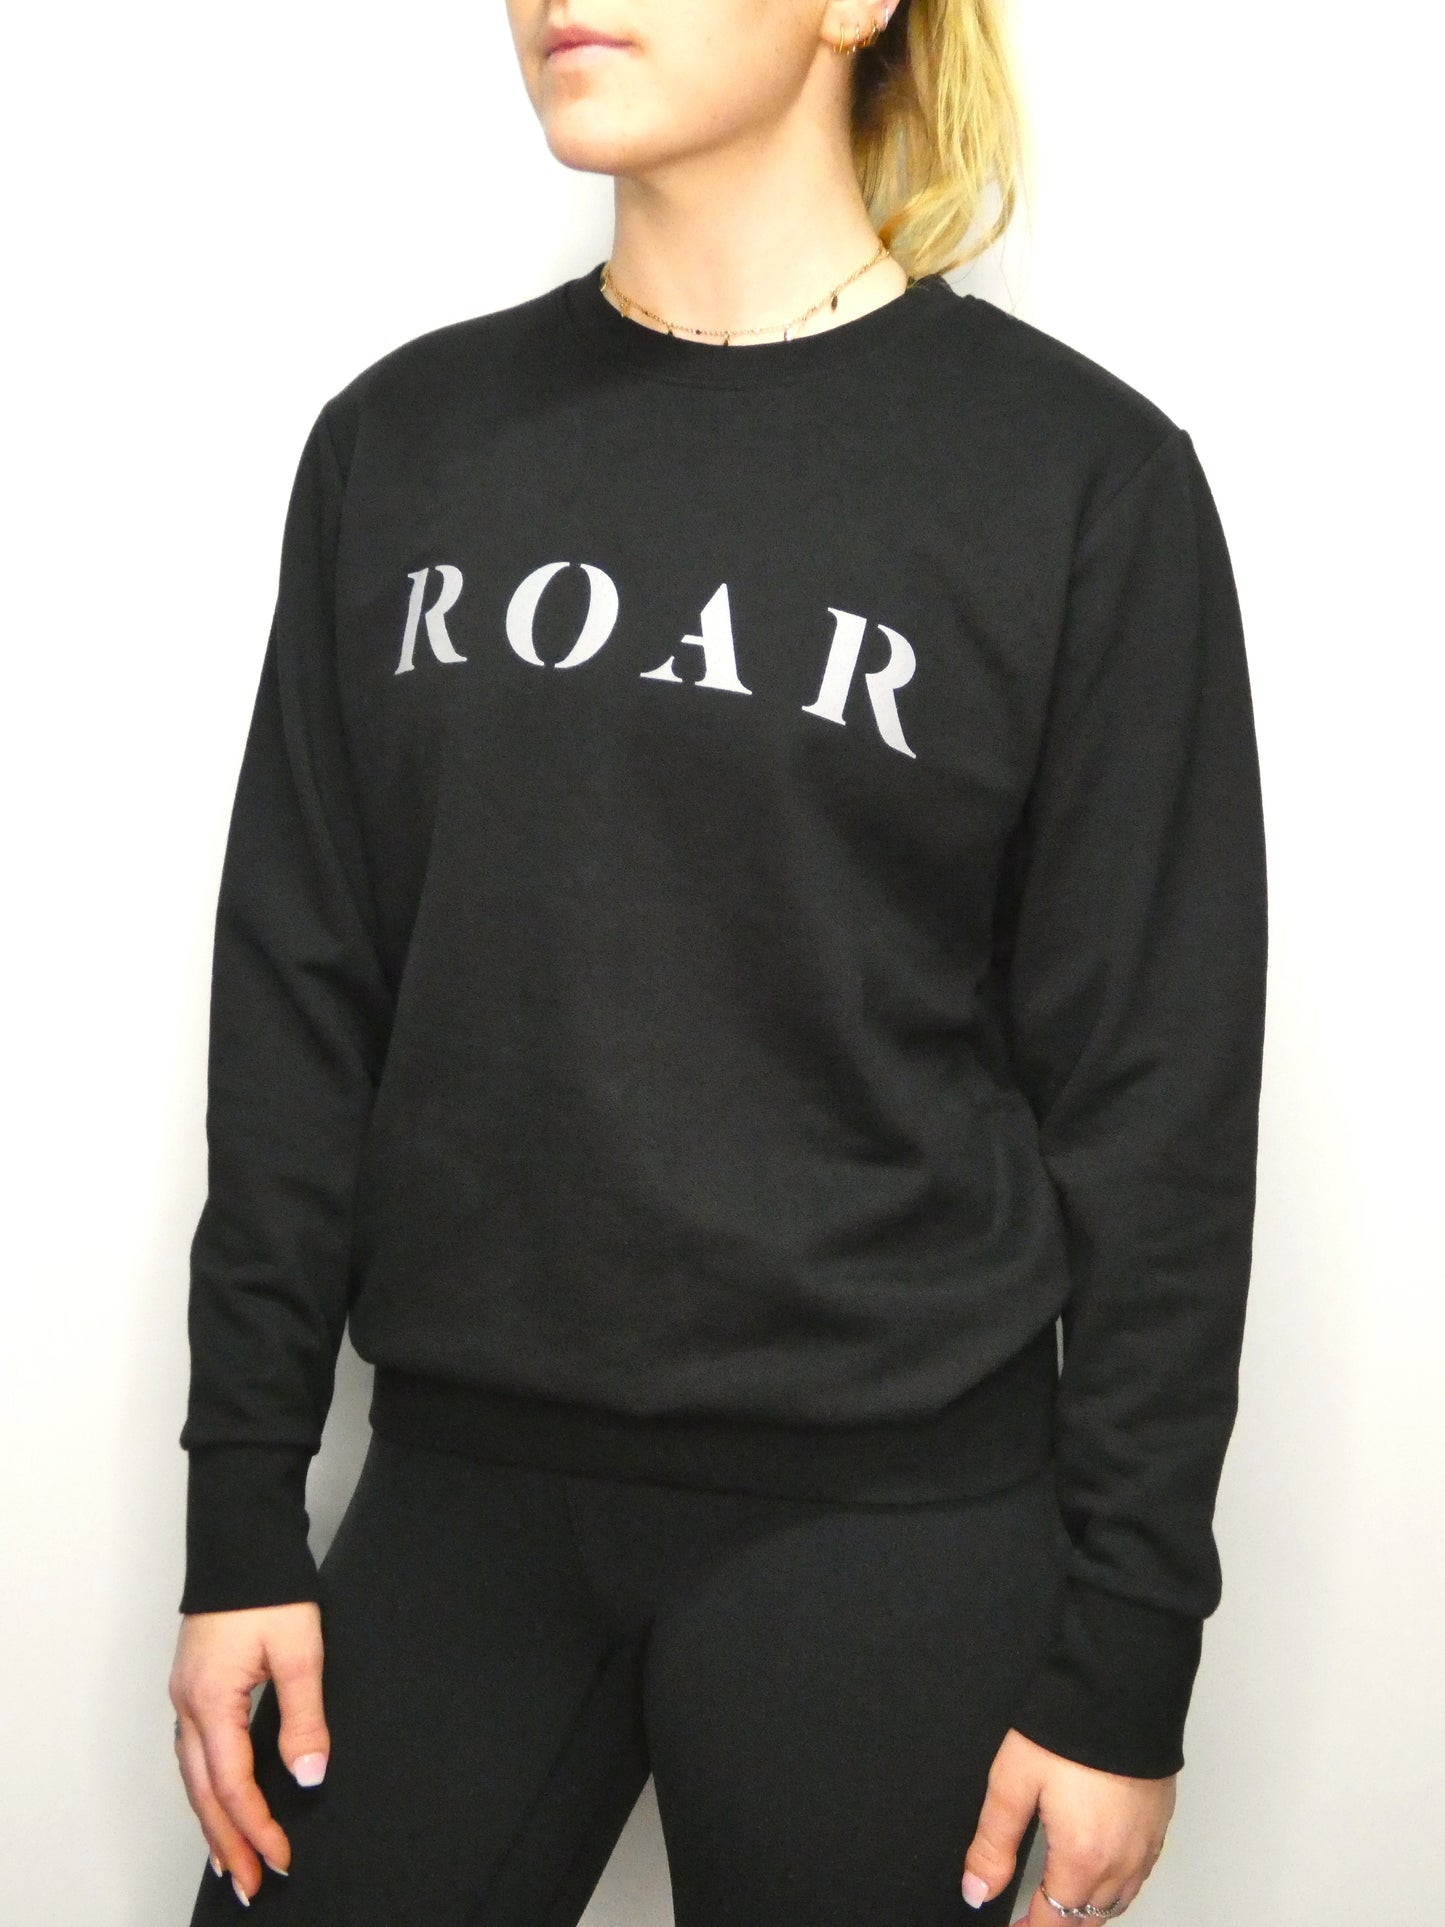 Roar sweatshirt